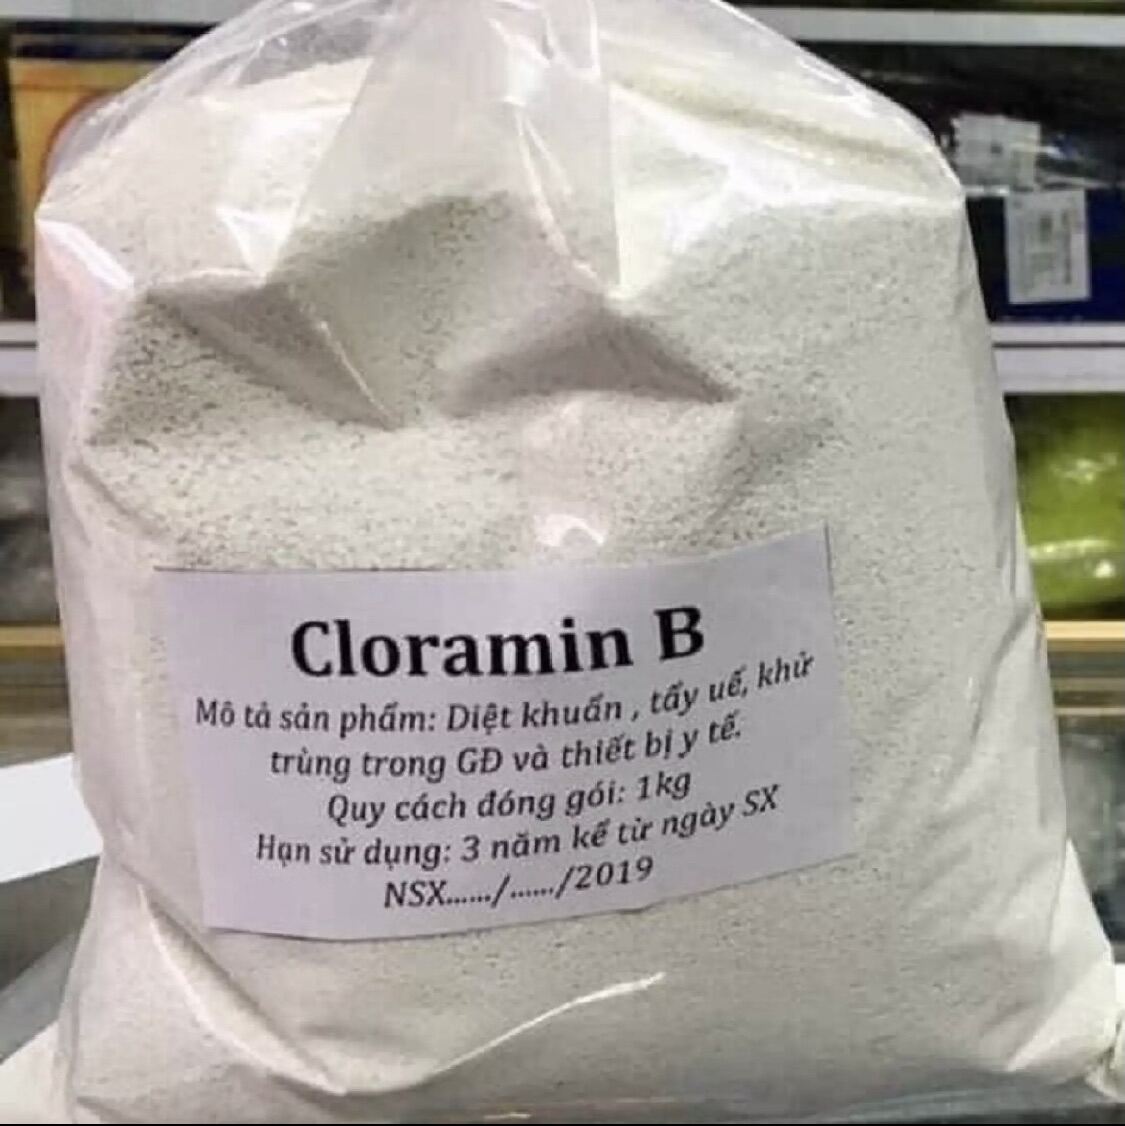 1 kg cloramin B xử lý nước sinh hoạt, sát khuẩn, tẩy uế